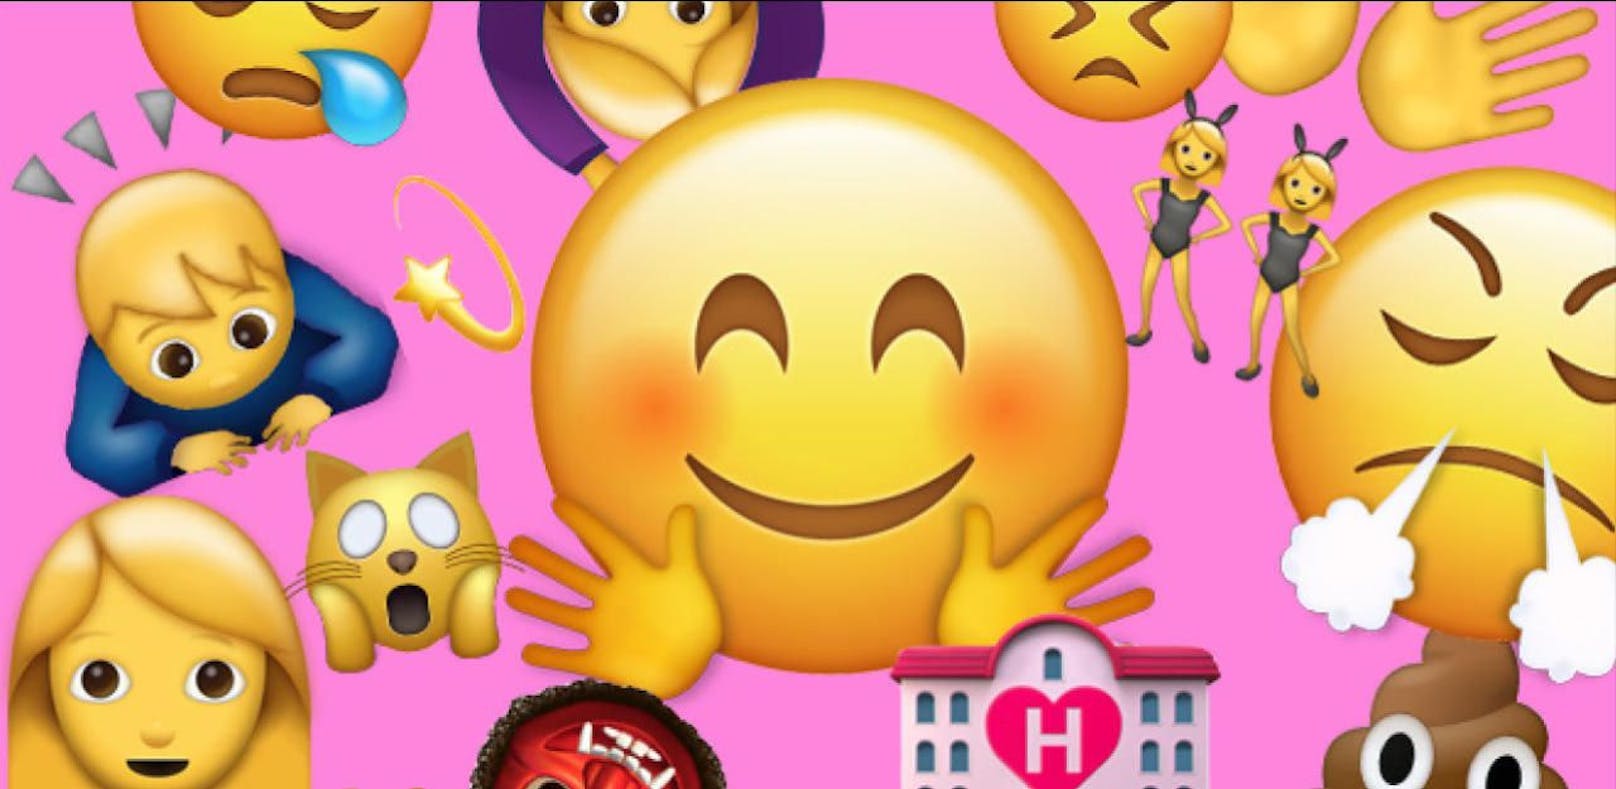 Wetten, du hast diese Emojis falsch verwendet?